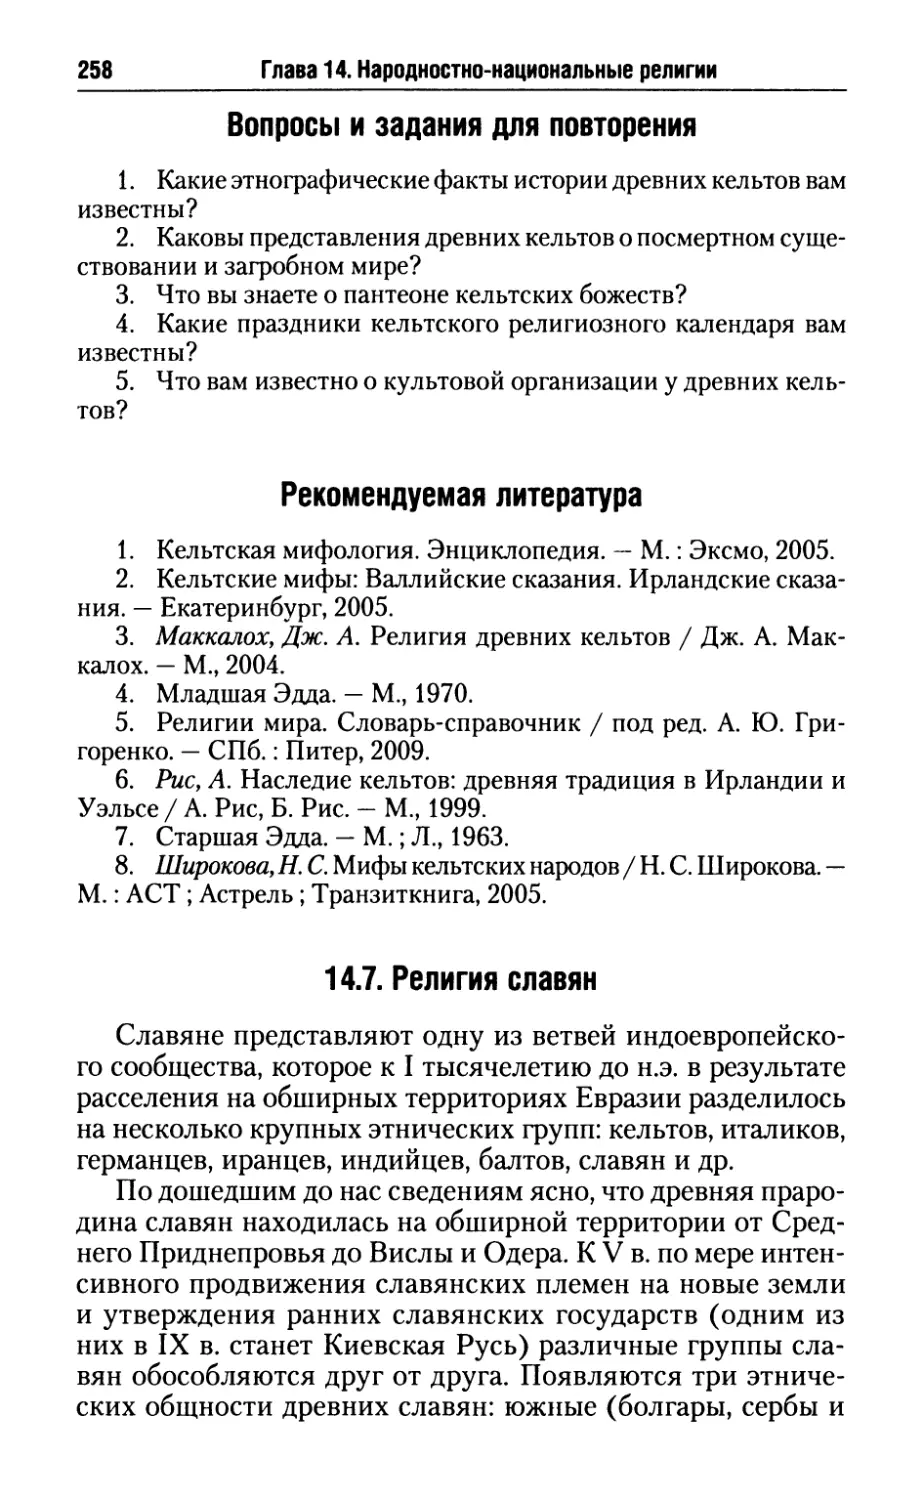 Рекомендуемая литература
14.7. Религия славян